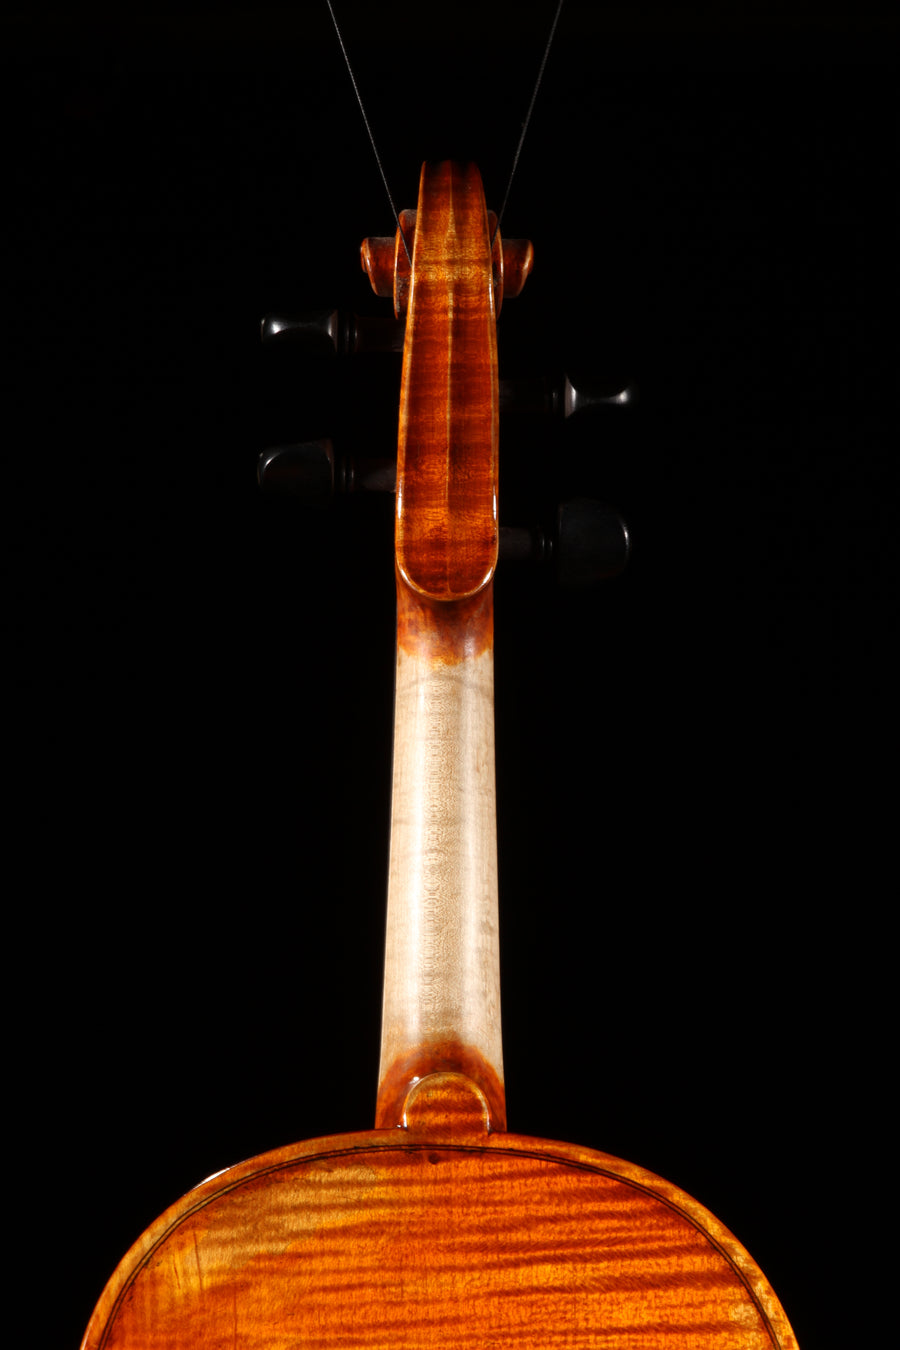 Krutz 400 Violin